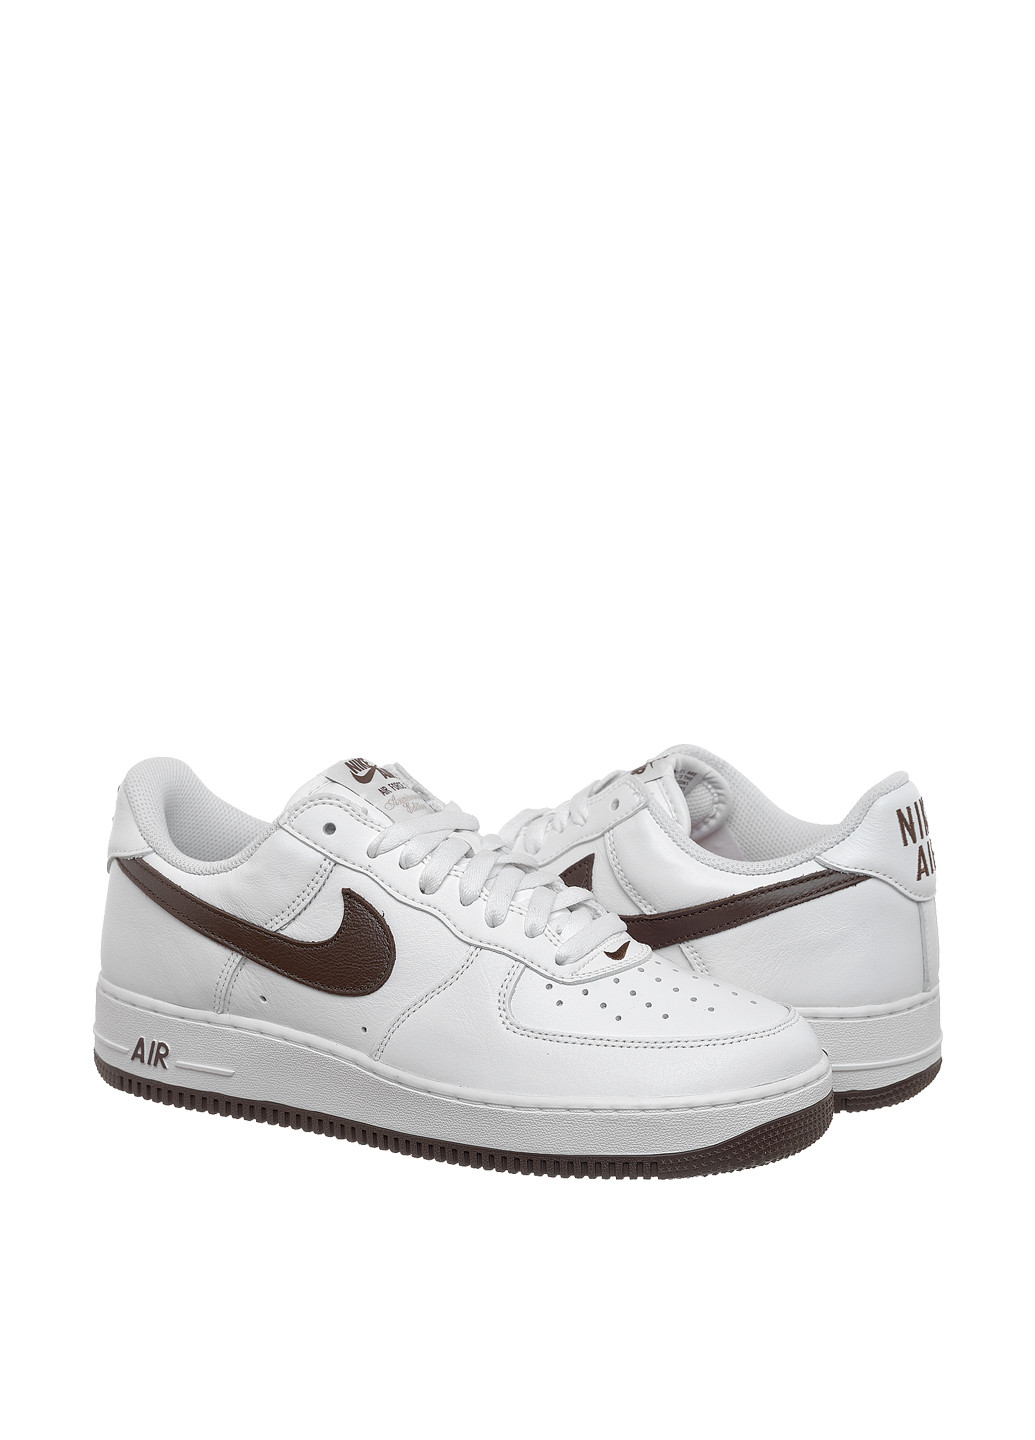 Белые демисезонные кроссовки dm0576-100_2024 Nike Air Force 1 Low Retro